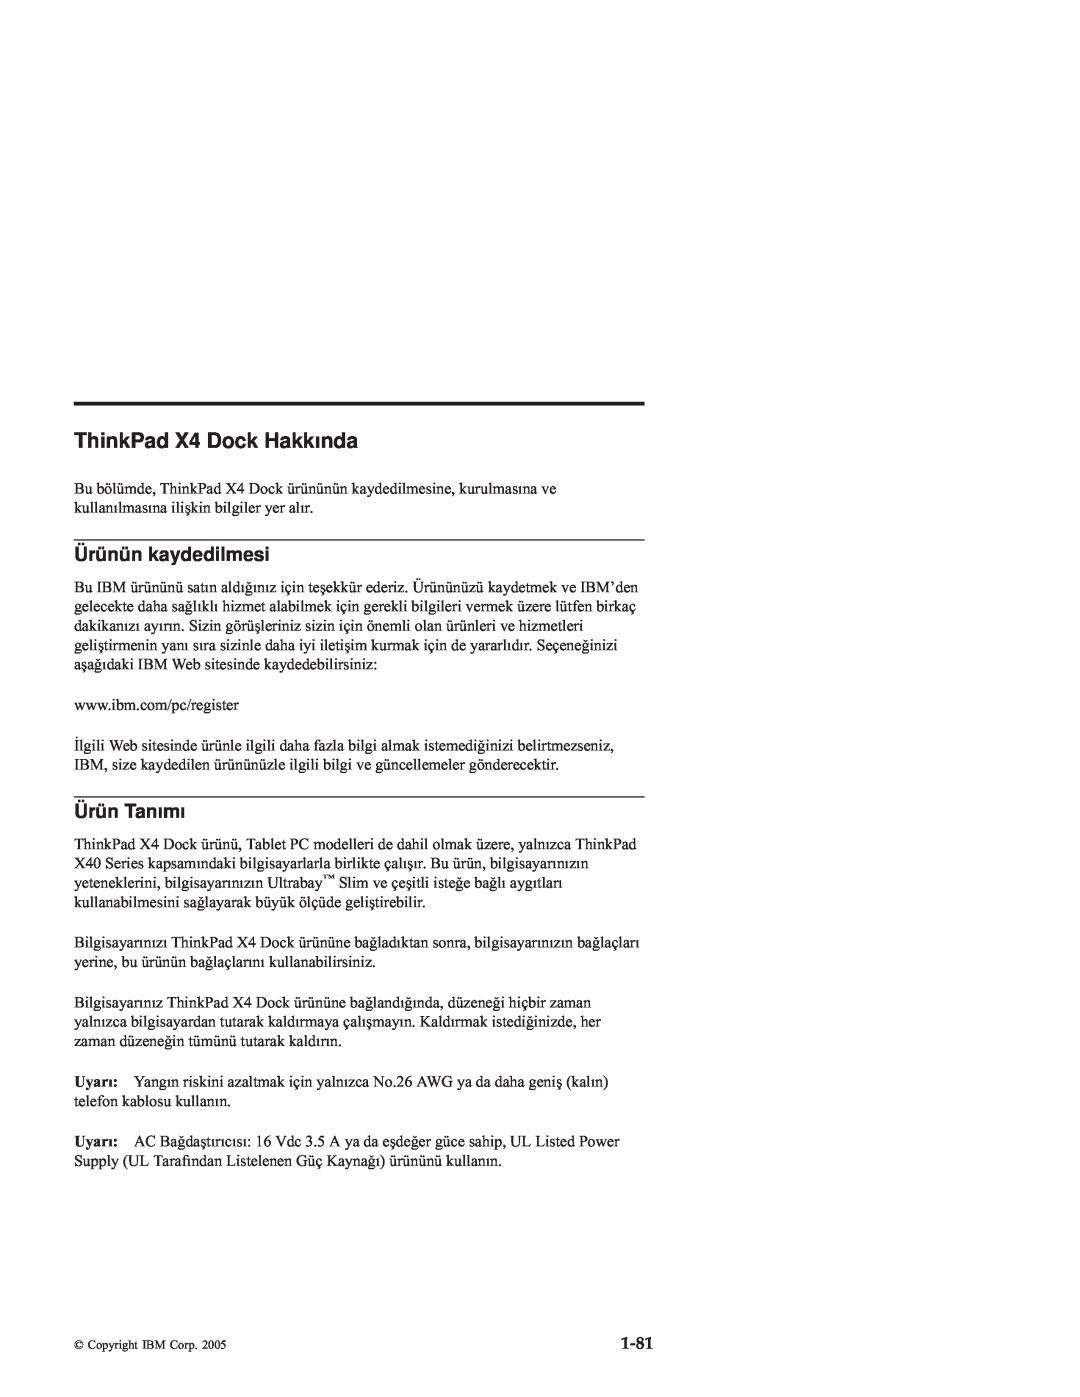 IBM manual ThinkPad X4 Dock Hakkında, Ürünün kaydedilmesi, Ürün Tanımı, 1-81 